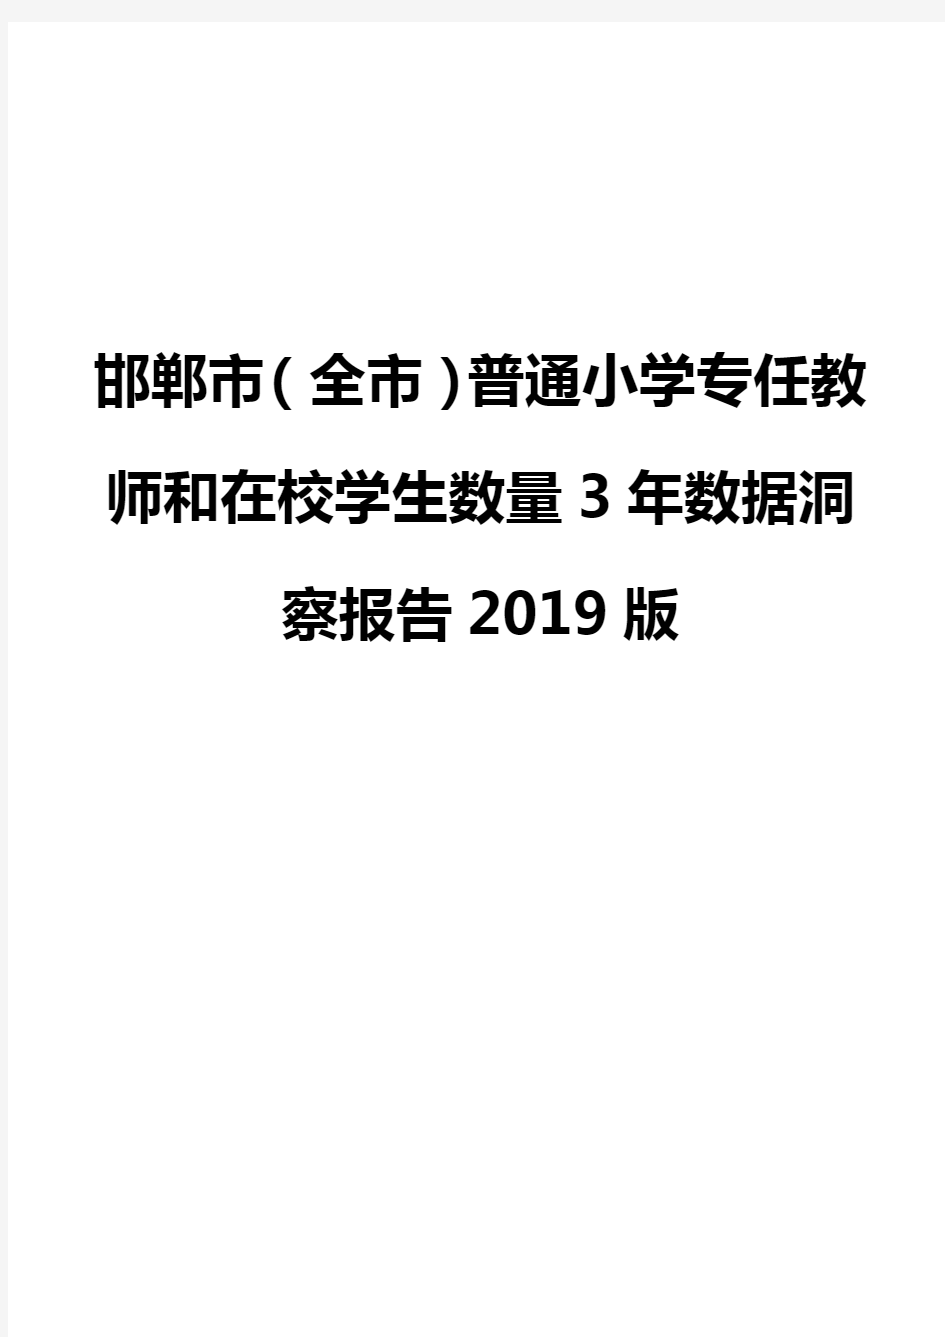 邯郸市(全市)普通小学专任教师和在校学生数量3年数据洞察报告2019版